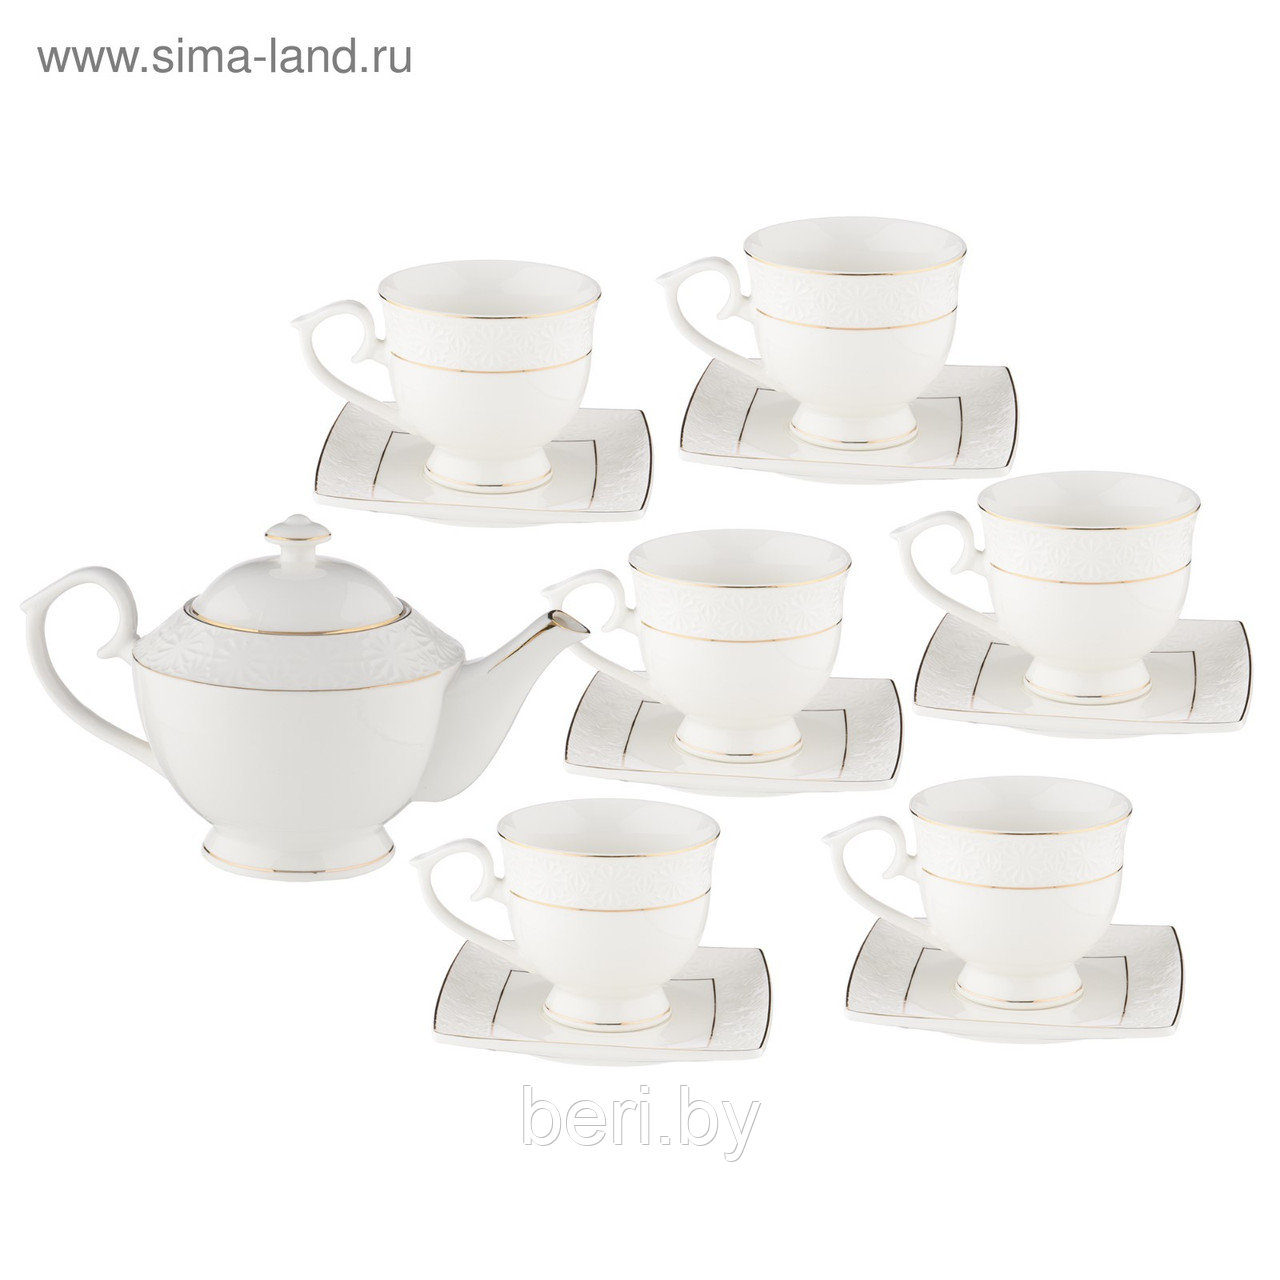 BK-6842 Сервиз чайный фарфоровый, чайный набор, 6 персон, 13 предметов, Bekker